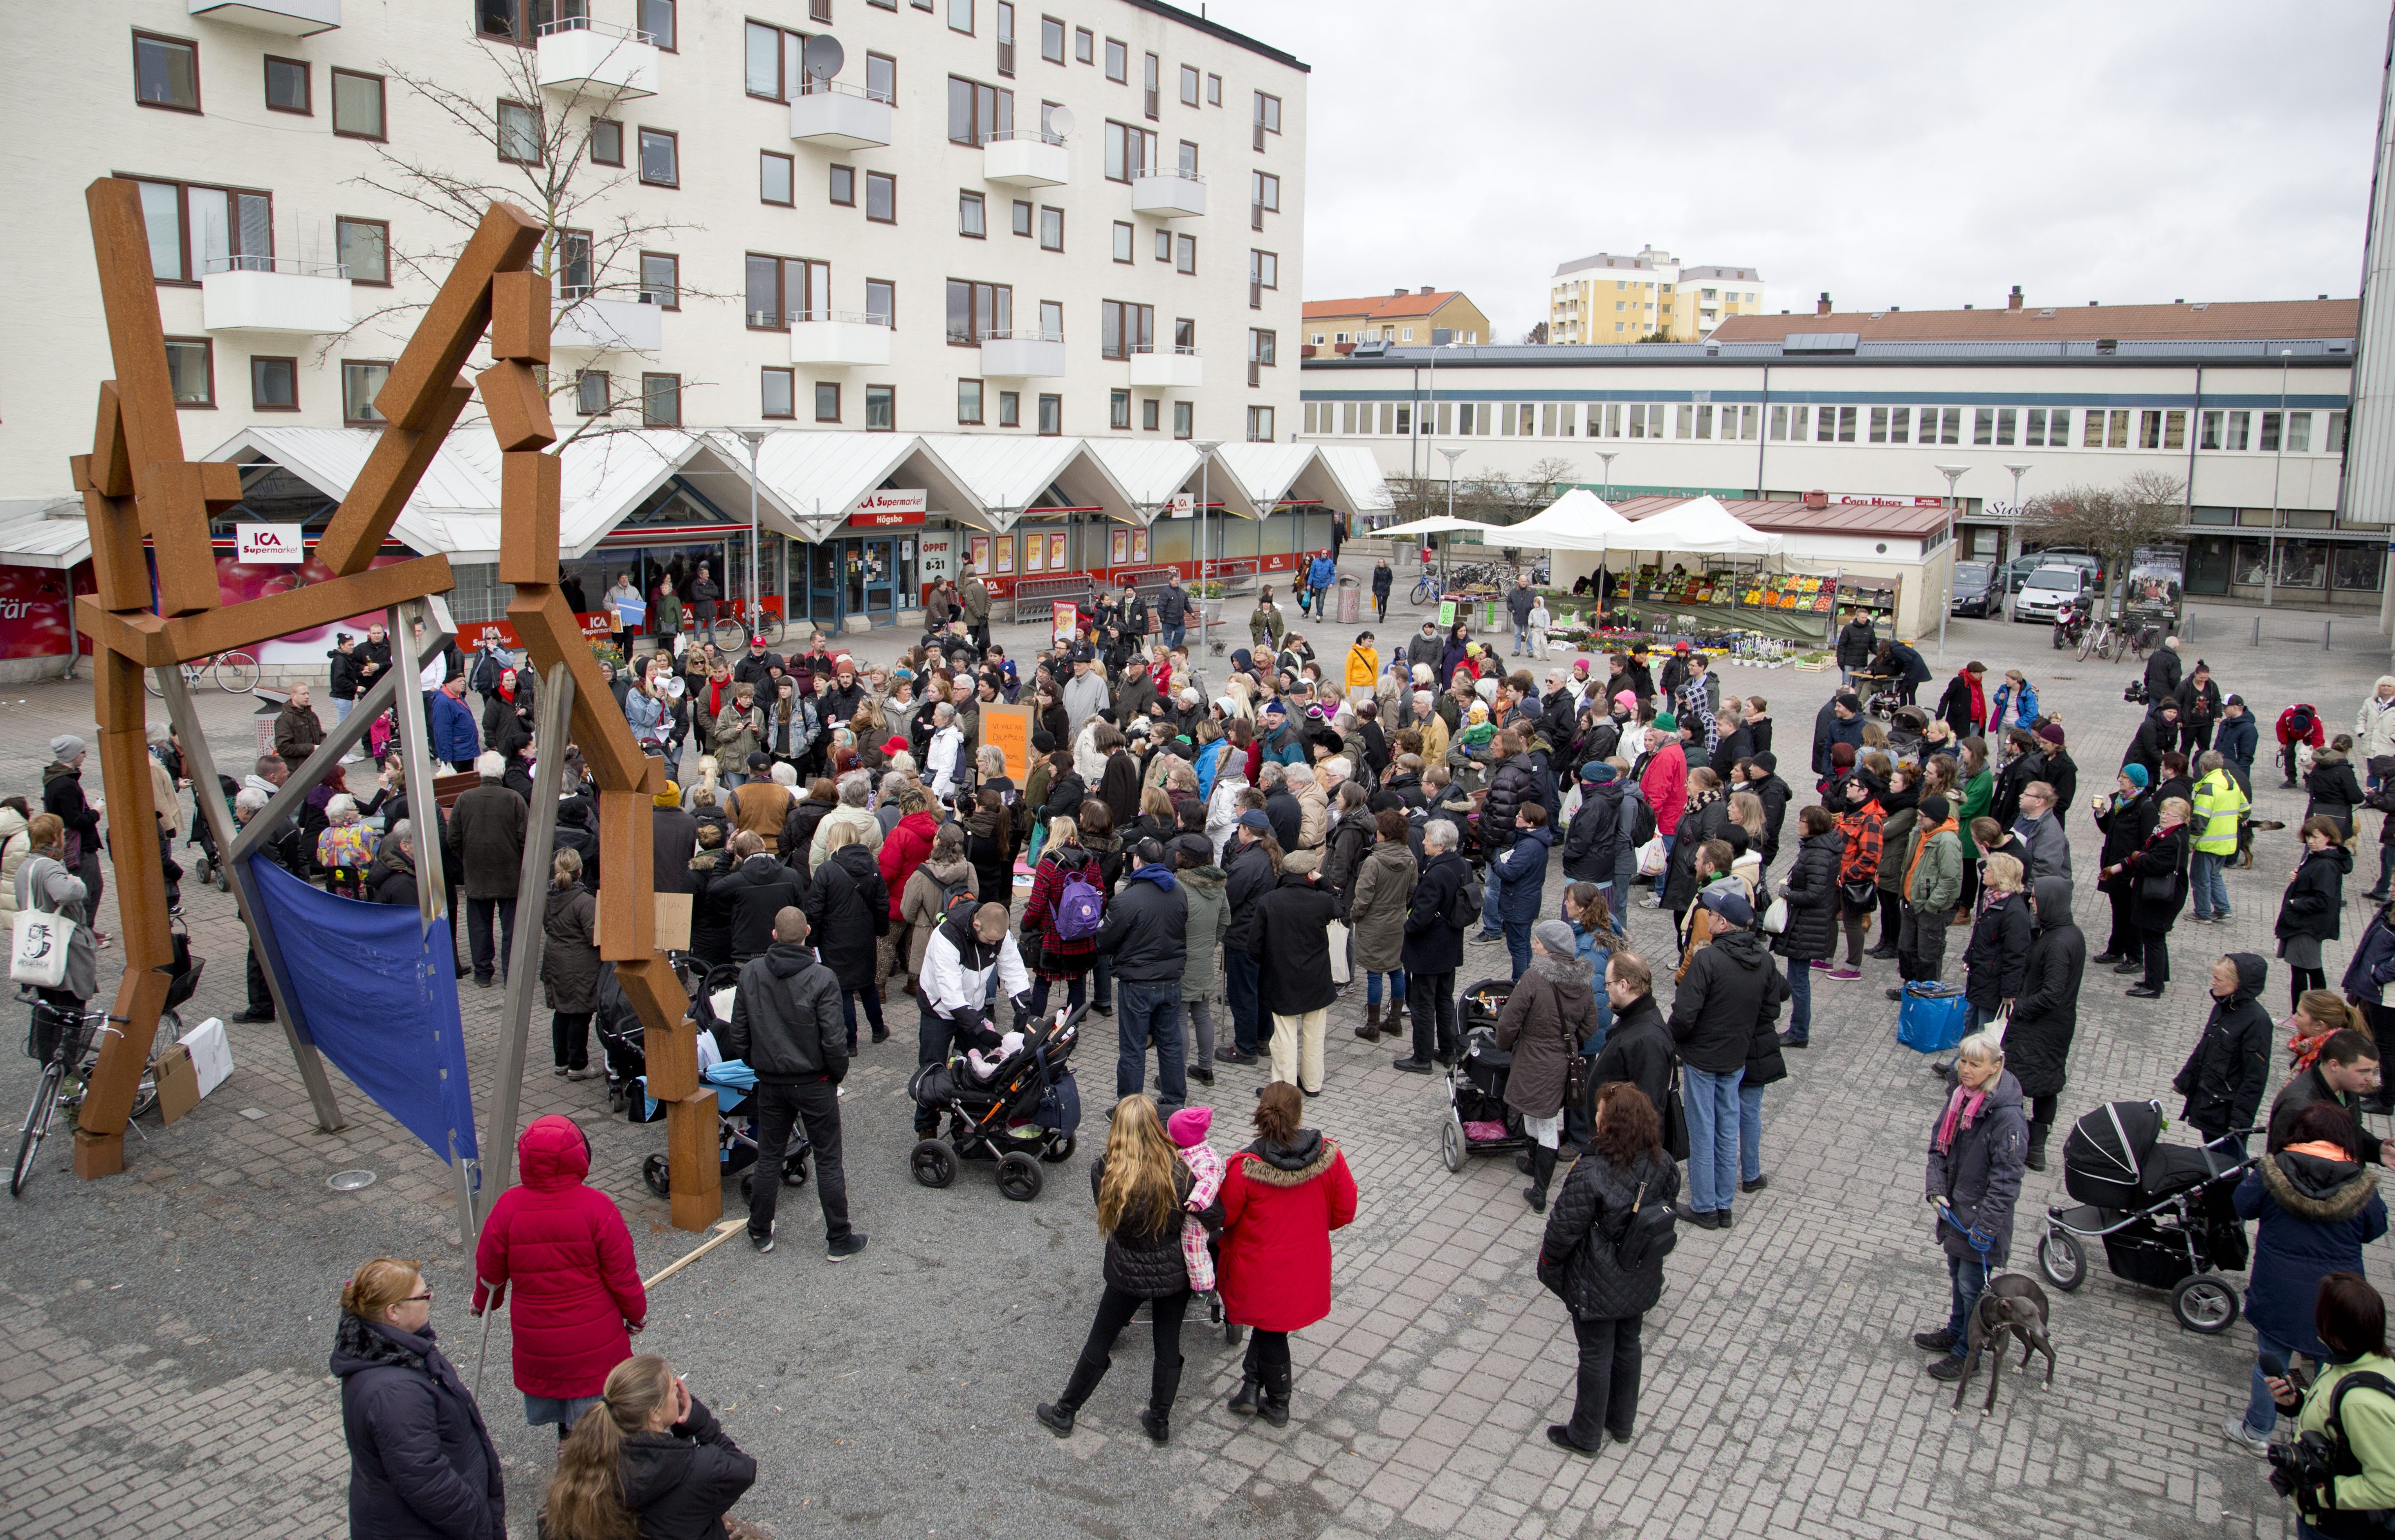 Hundratals människor samlades i Högsbo under manifestationen tidigare i år.